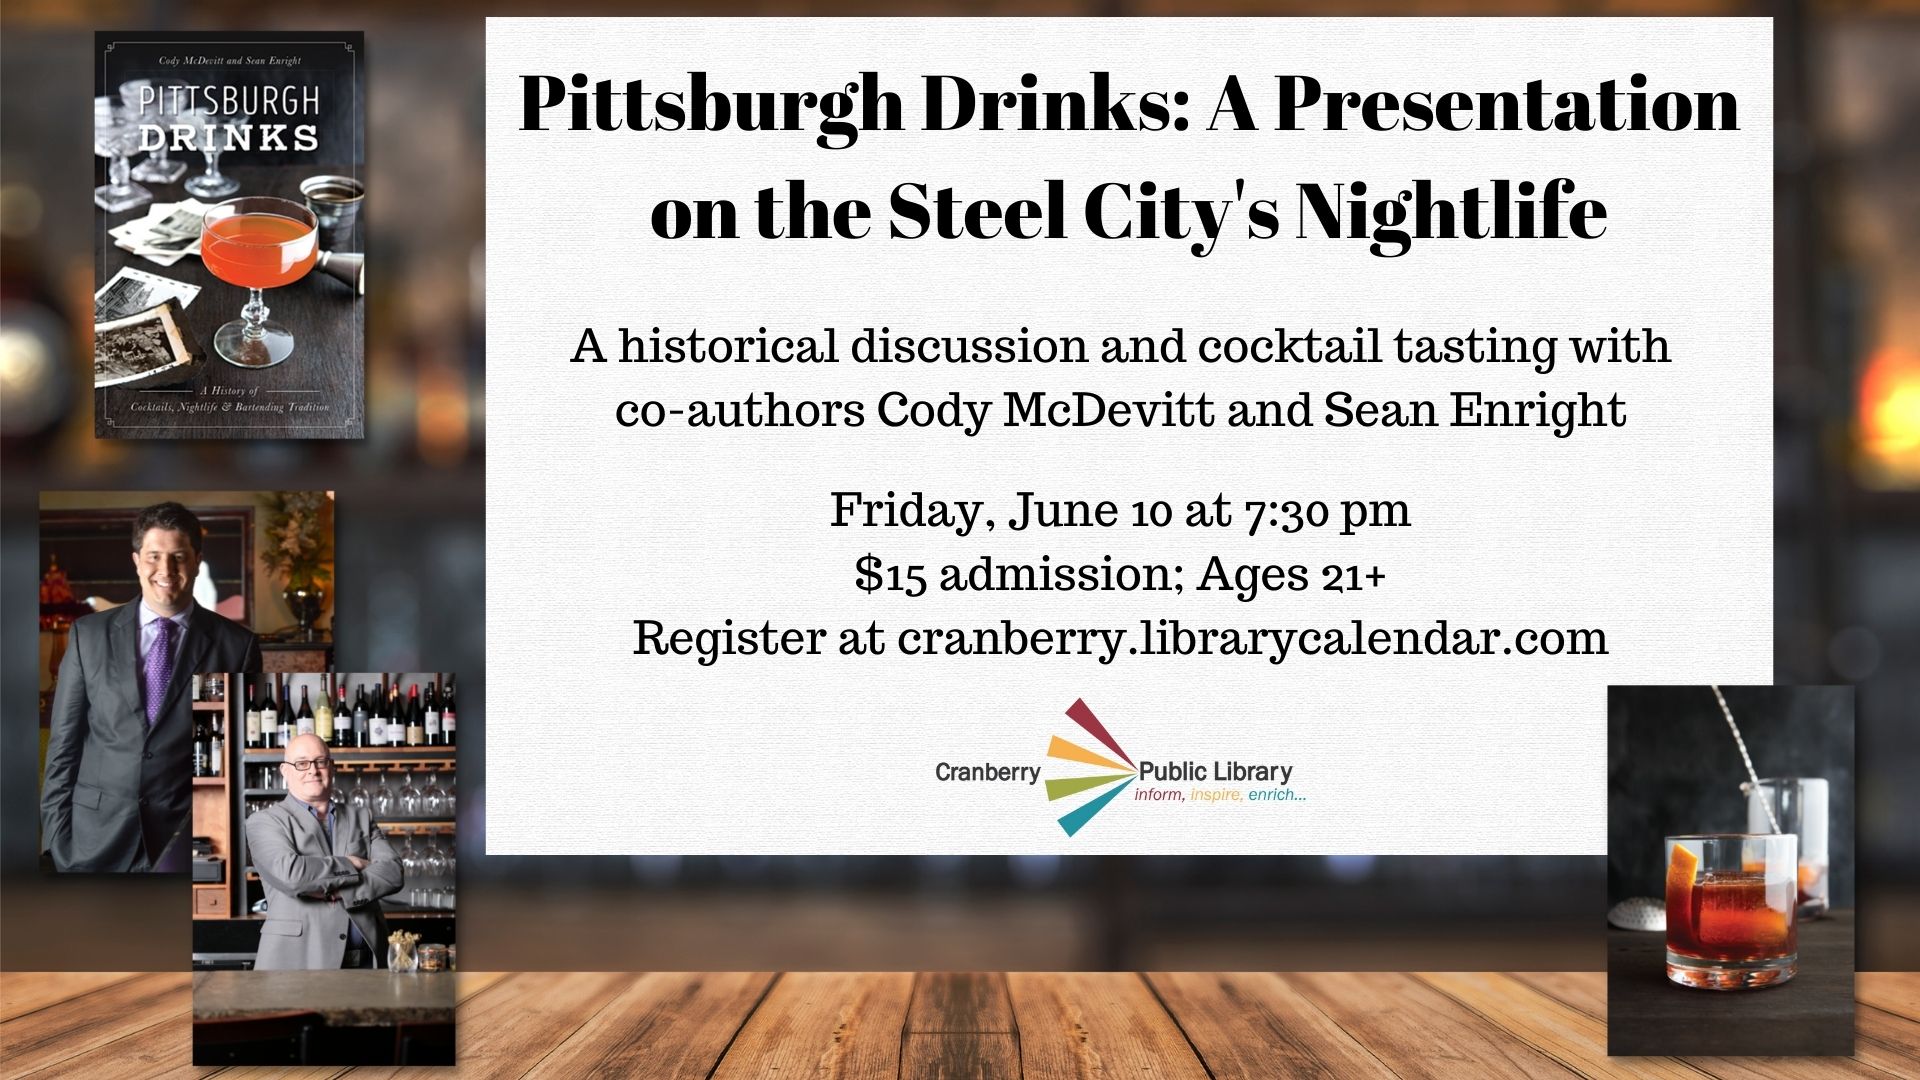 Flyer for Pittsburgh Drinks program